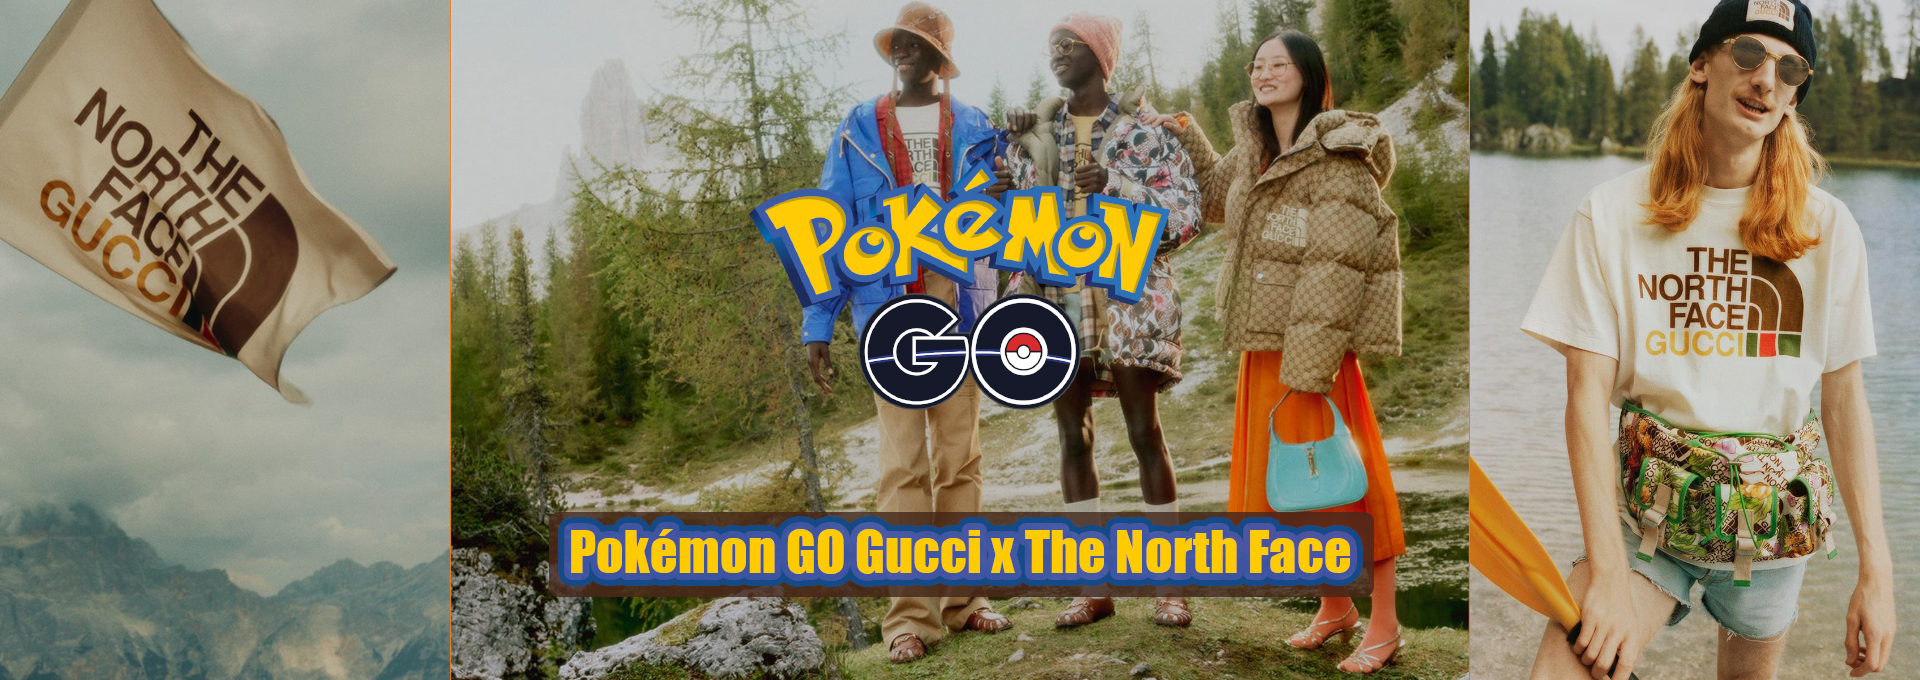 Pokémon GO collaborera avec Gucci x The North Face